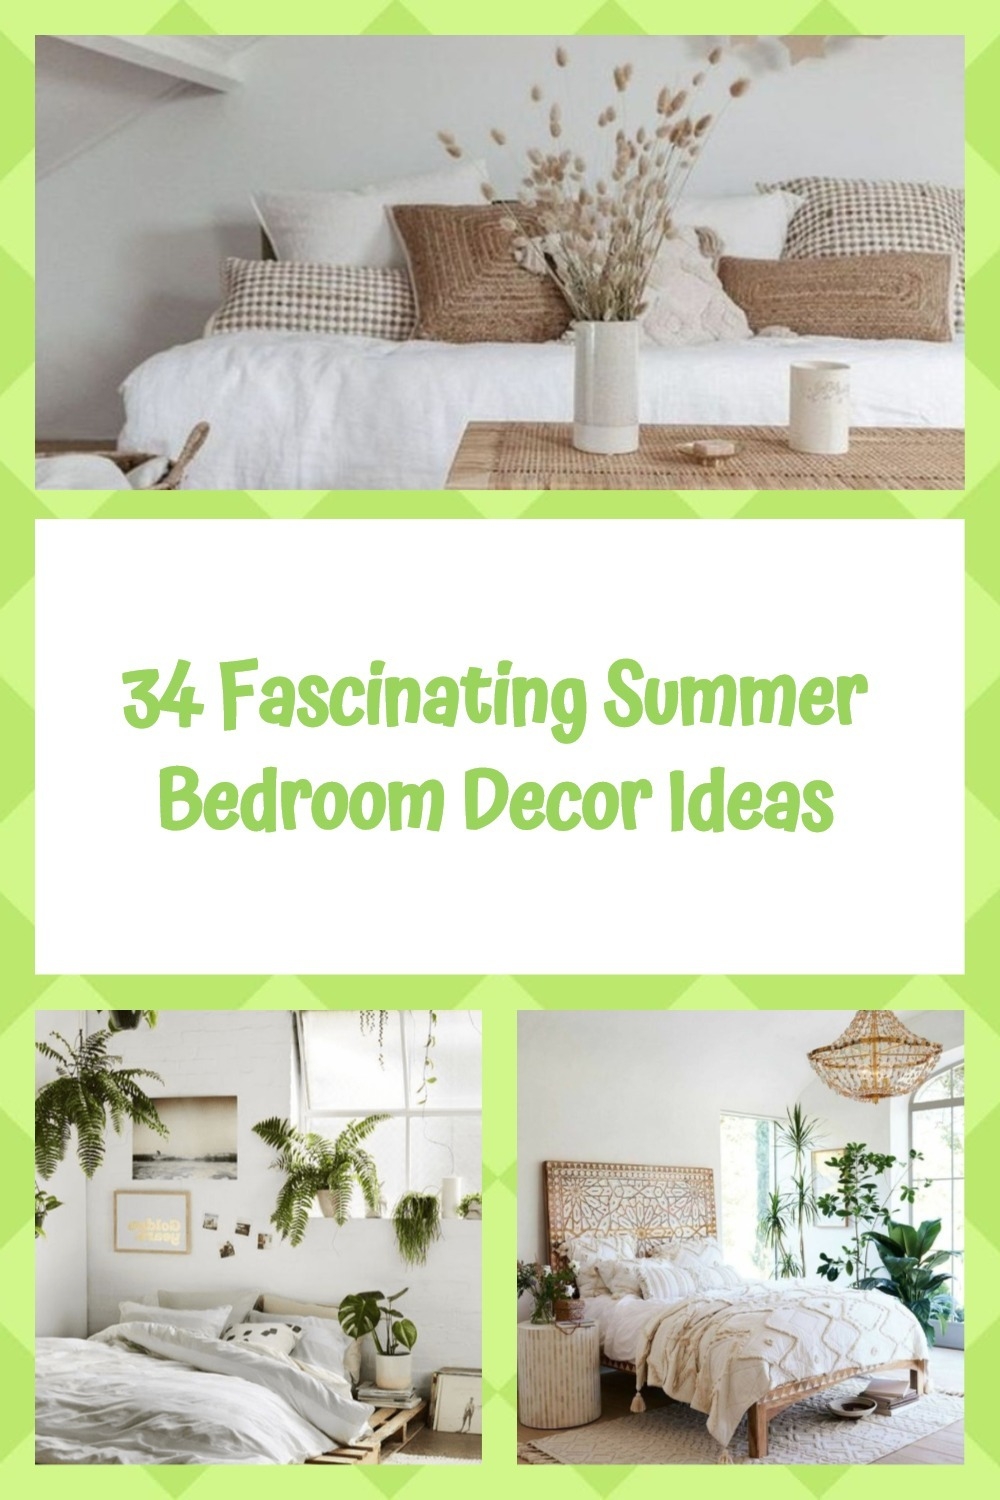 34 Fascinating Summer Bedroom Decor Ideas